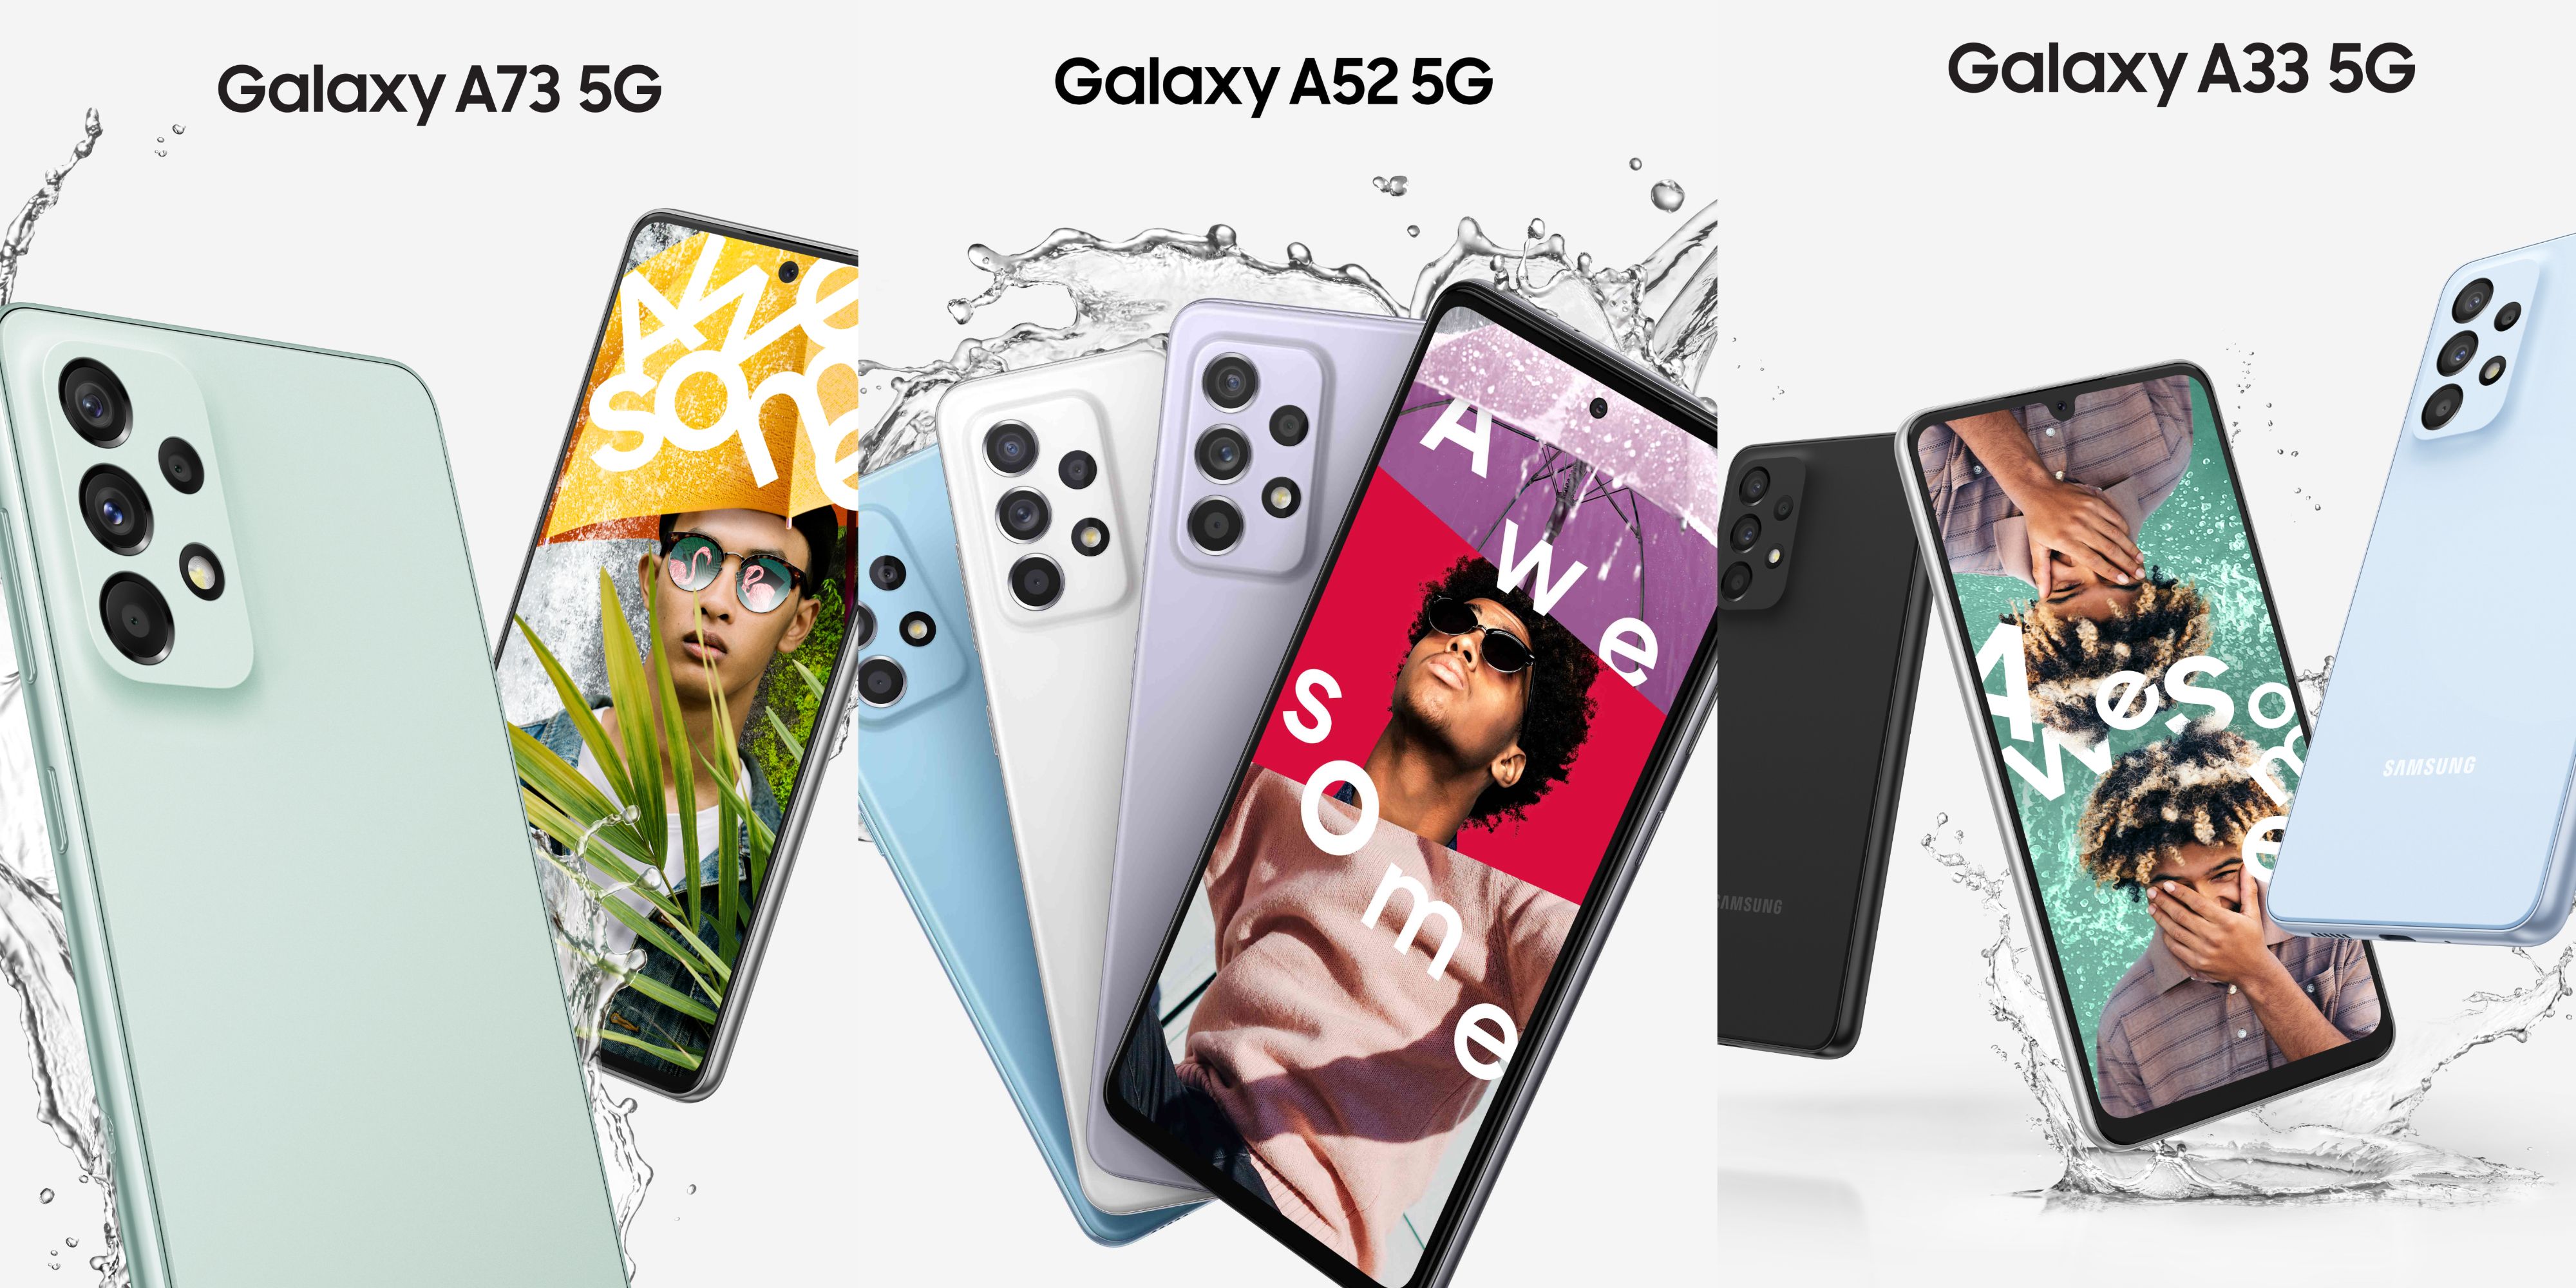 imagens combinadas dos telefones Samsung A Series Galaxy A73 5G, A52 5G e A33 5G em várias cores